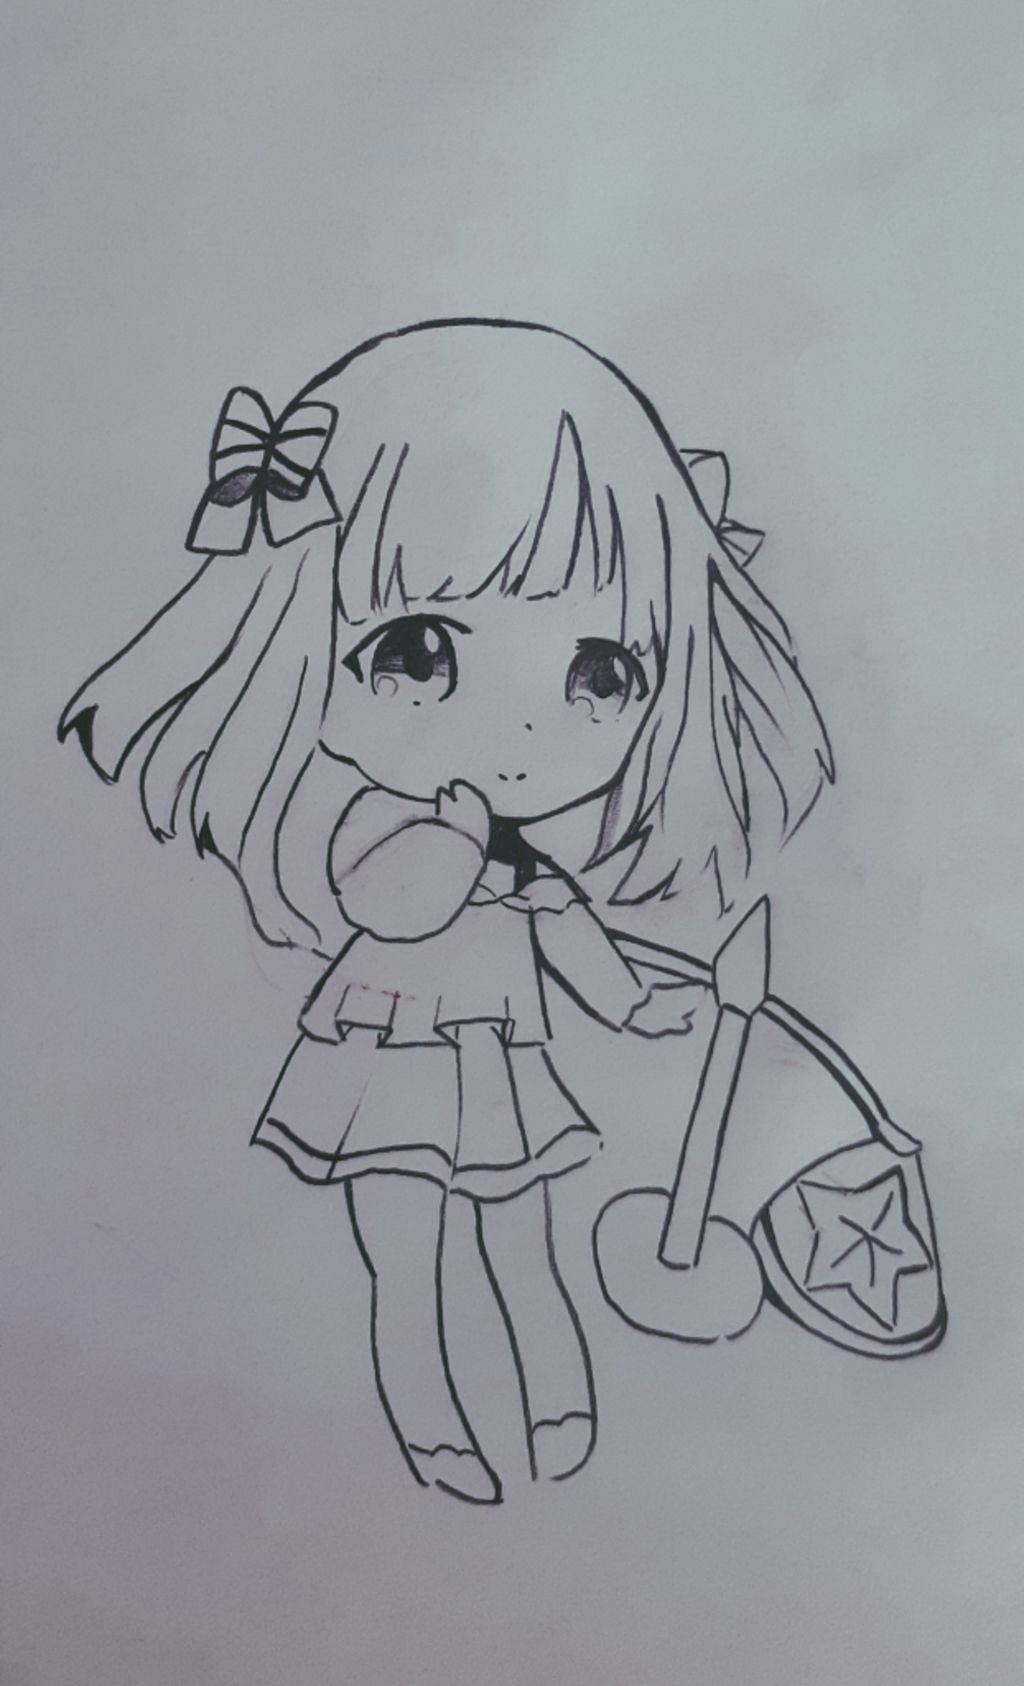 Vẽ Anime Chibi  Thiên Bình Vẽ 12 cung hoàng đạo bằng bút chì  Vẽ nàng  Anime lạnh lùng bởi bé CIU  YouTube